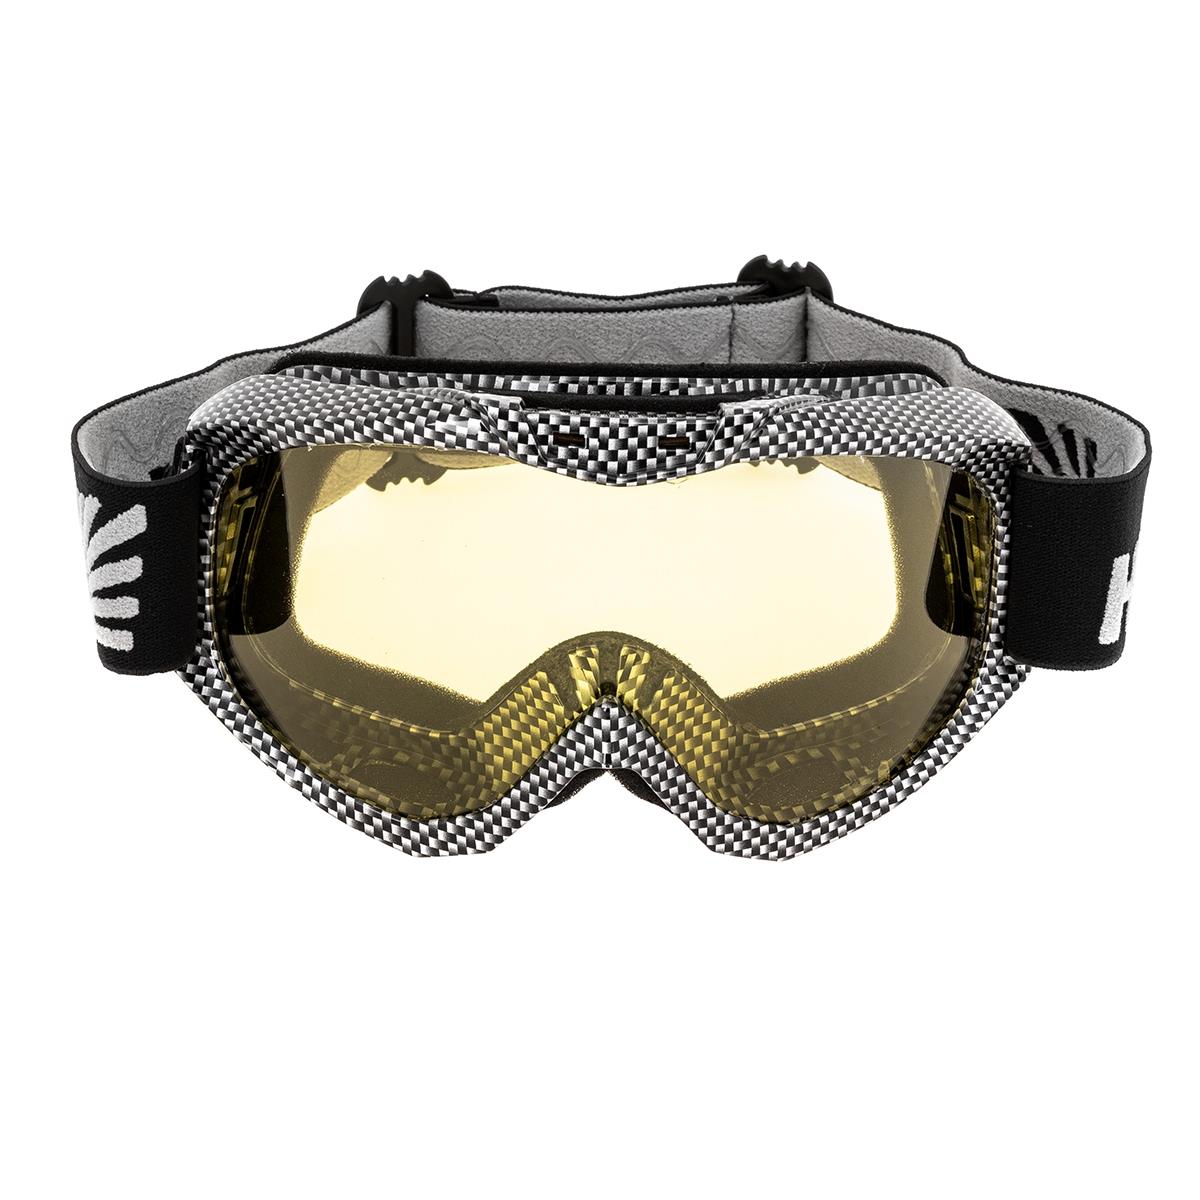 Очки горнолыжные HS-MT-001-Y Helios очки полумаска для плавания с берушами детские uv защита